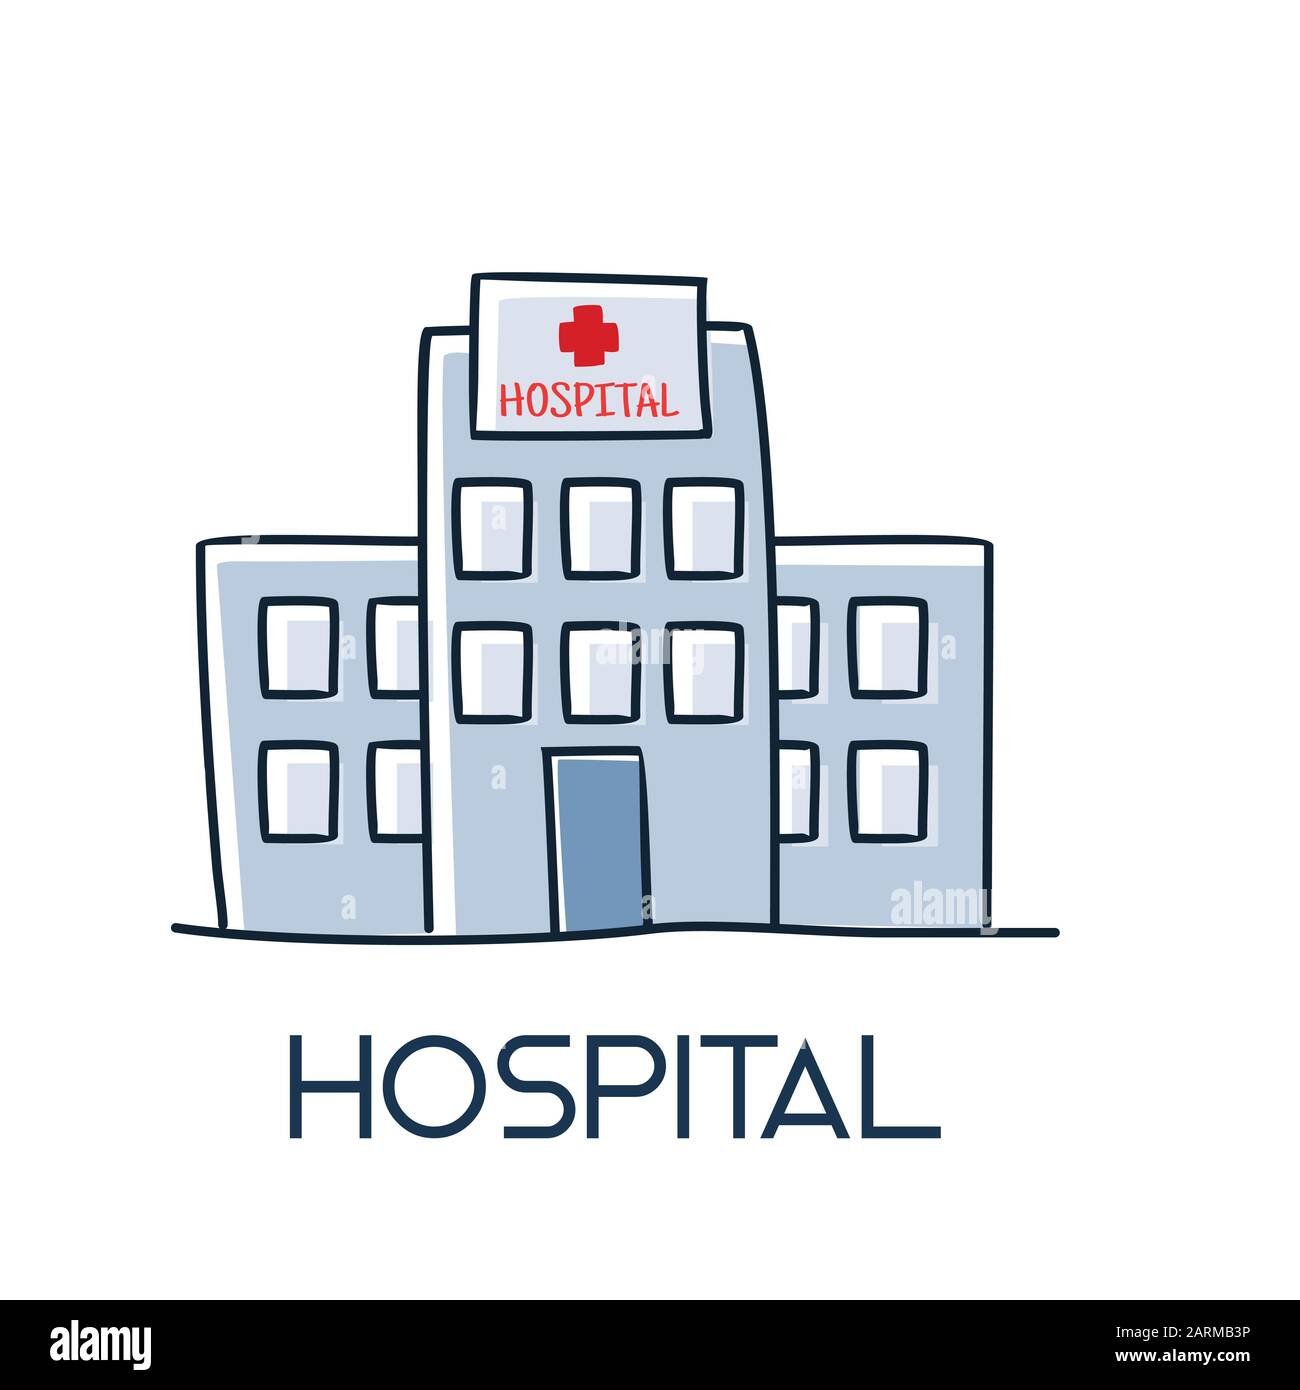 illustrazione dell'icona medica medica in stile piano a ombra lunga della struttura sanitaria ospedaliera Illustrazione Vettoriale